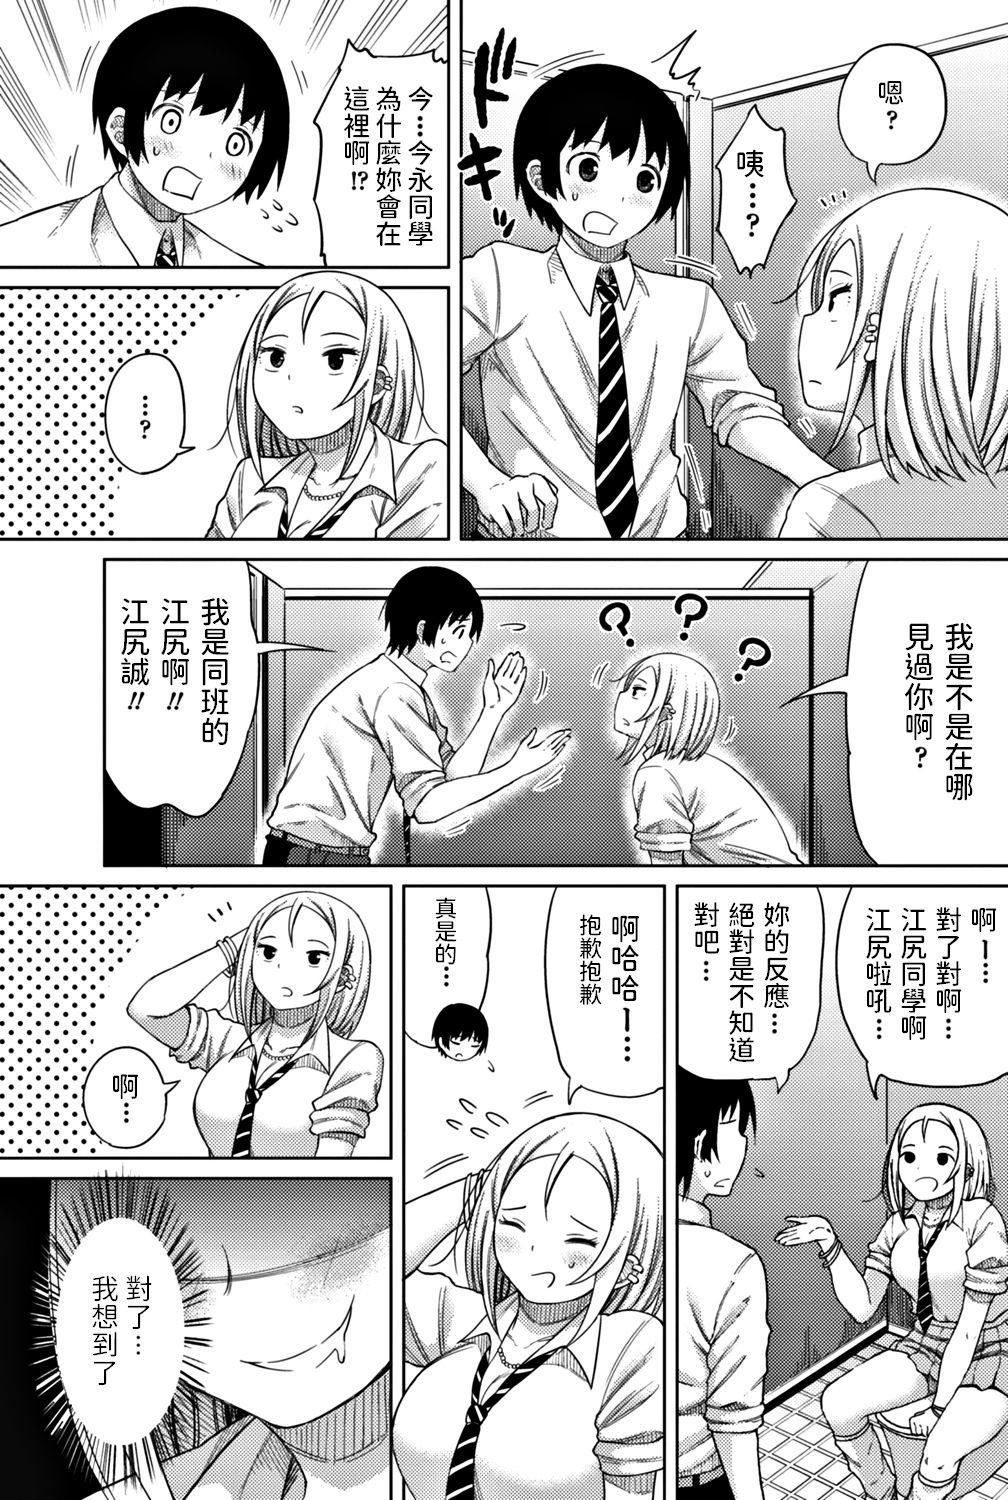 4some Doushite Kimi ga Koko ni Iru!? Stud - Page 3